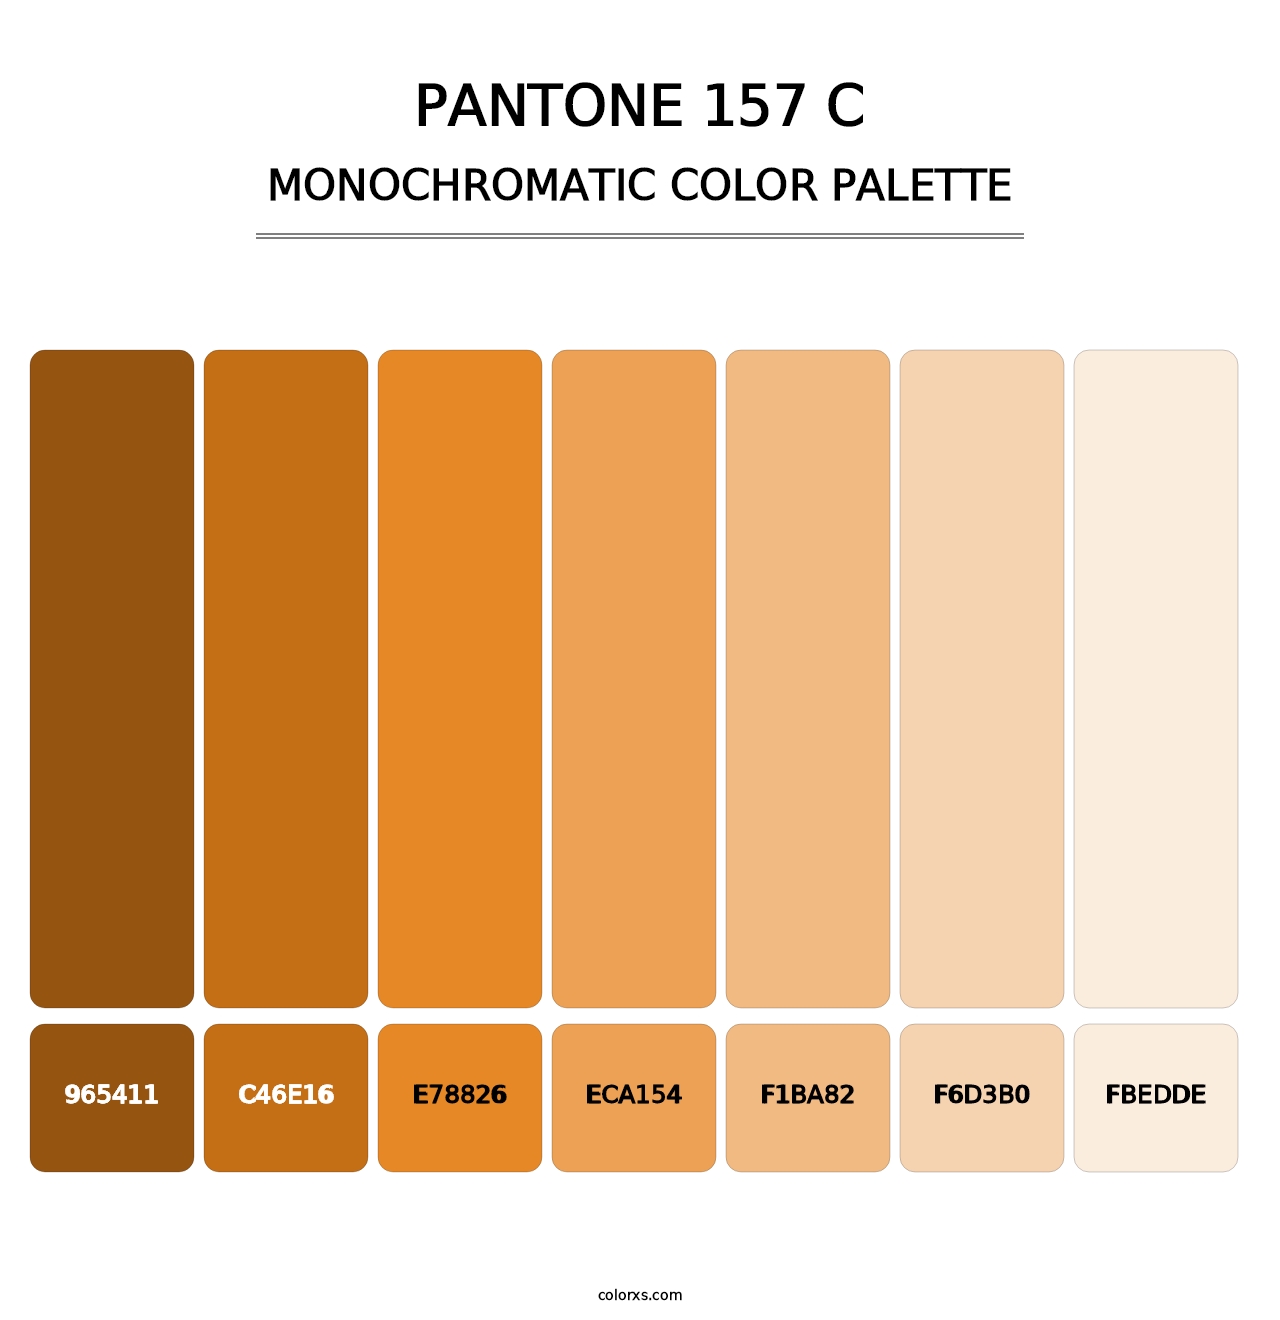 PANTONE 157 C - Monochromatic Color Palette